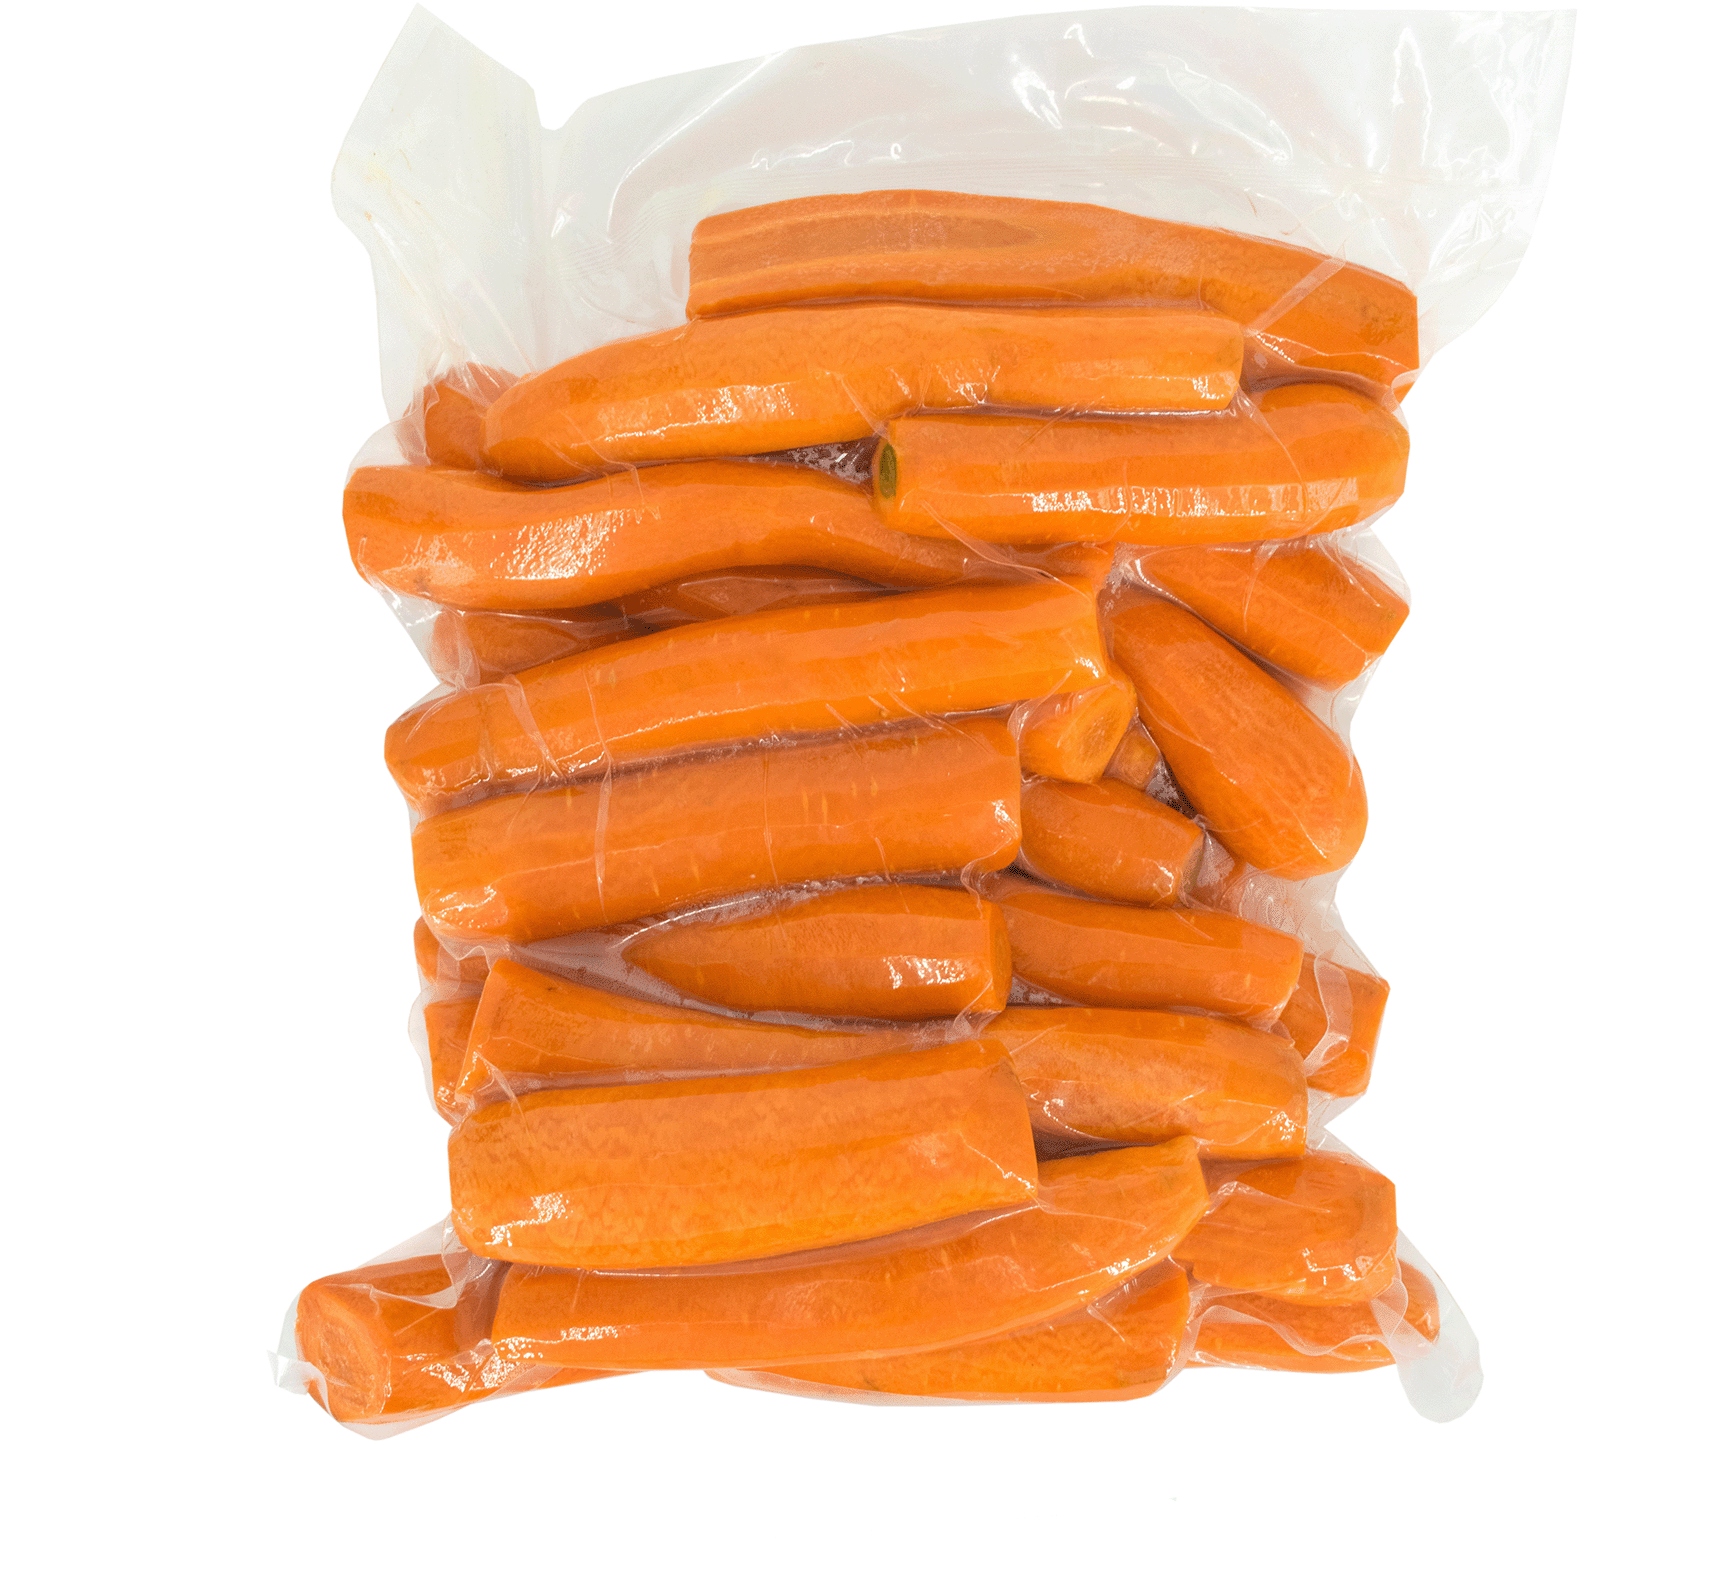 Karotten in einer Vakumverpackung